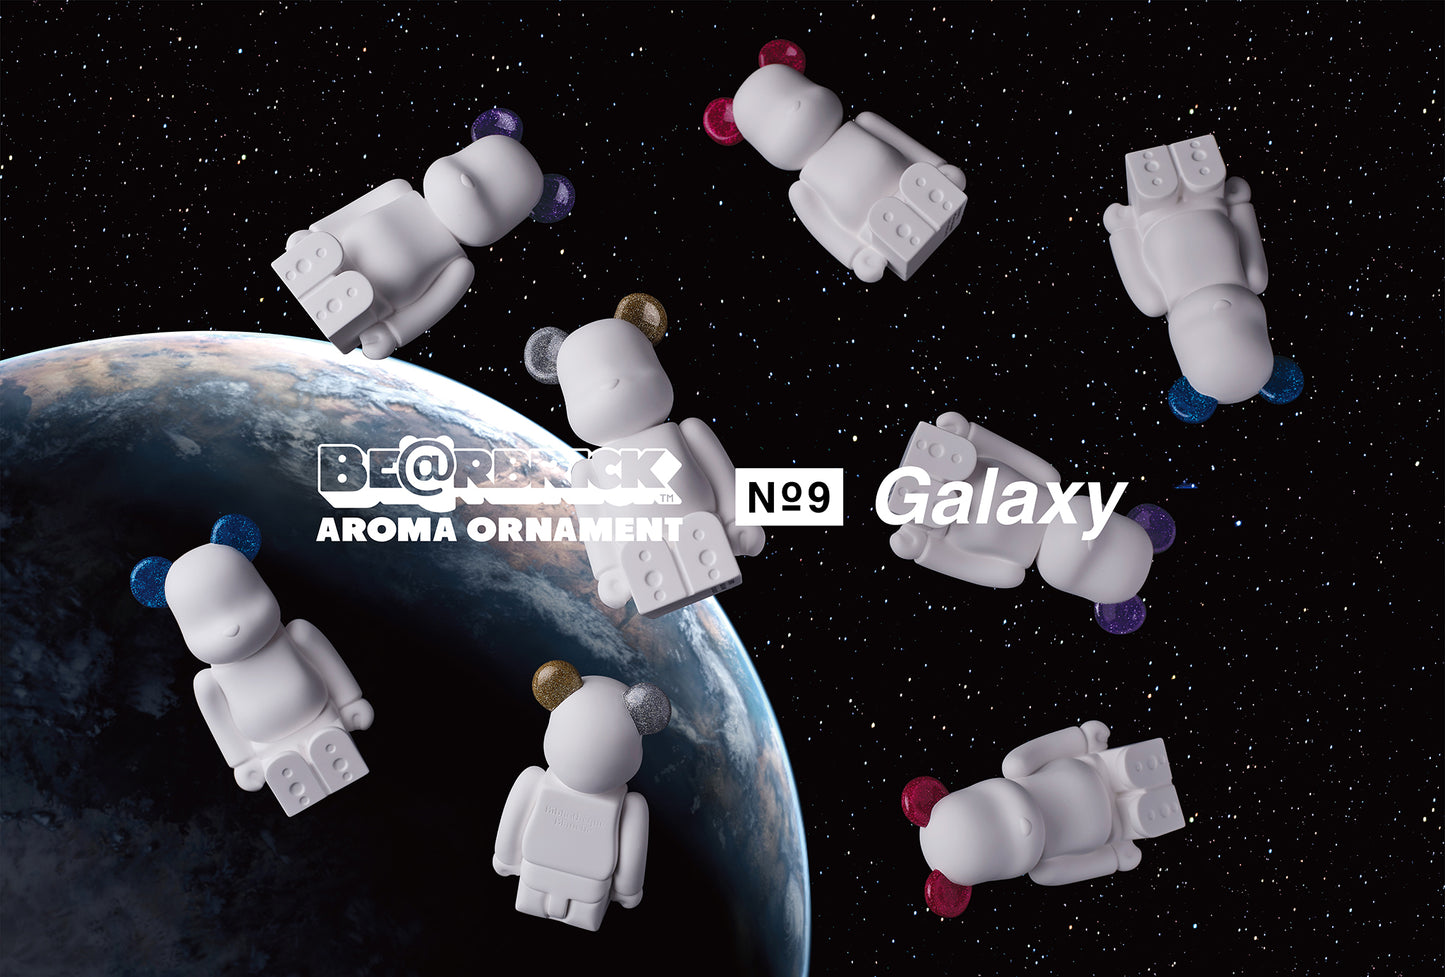 BE@RBRICK AROMA ORNAMENT No.9 Galaxy (2021) PINK NEBULA